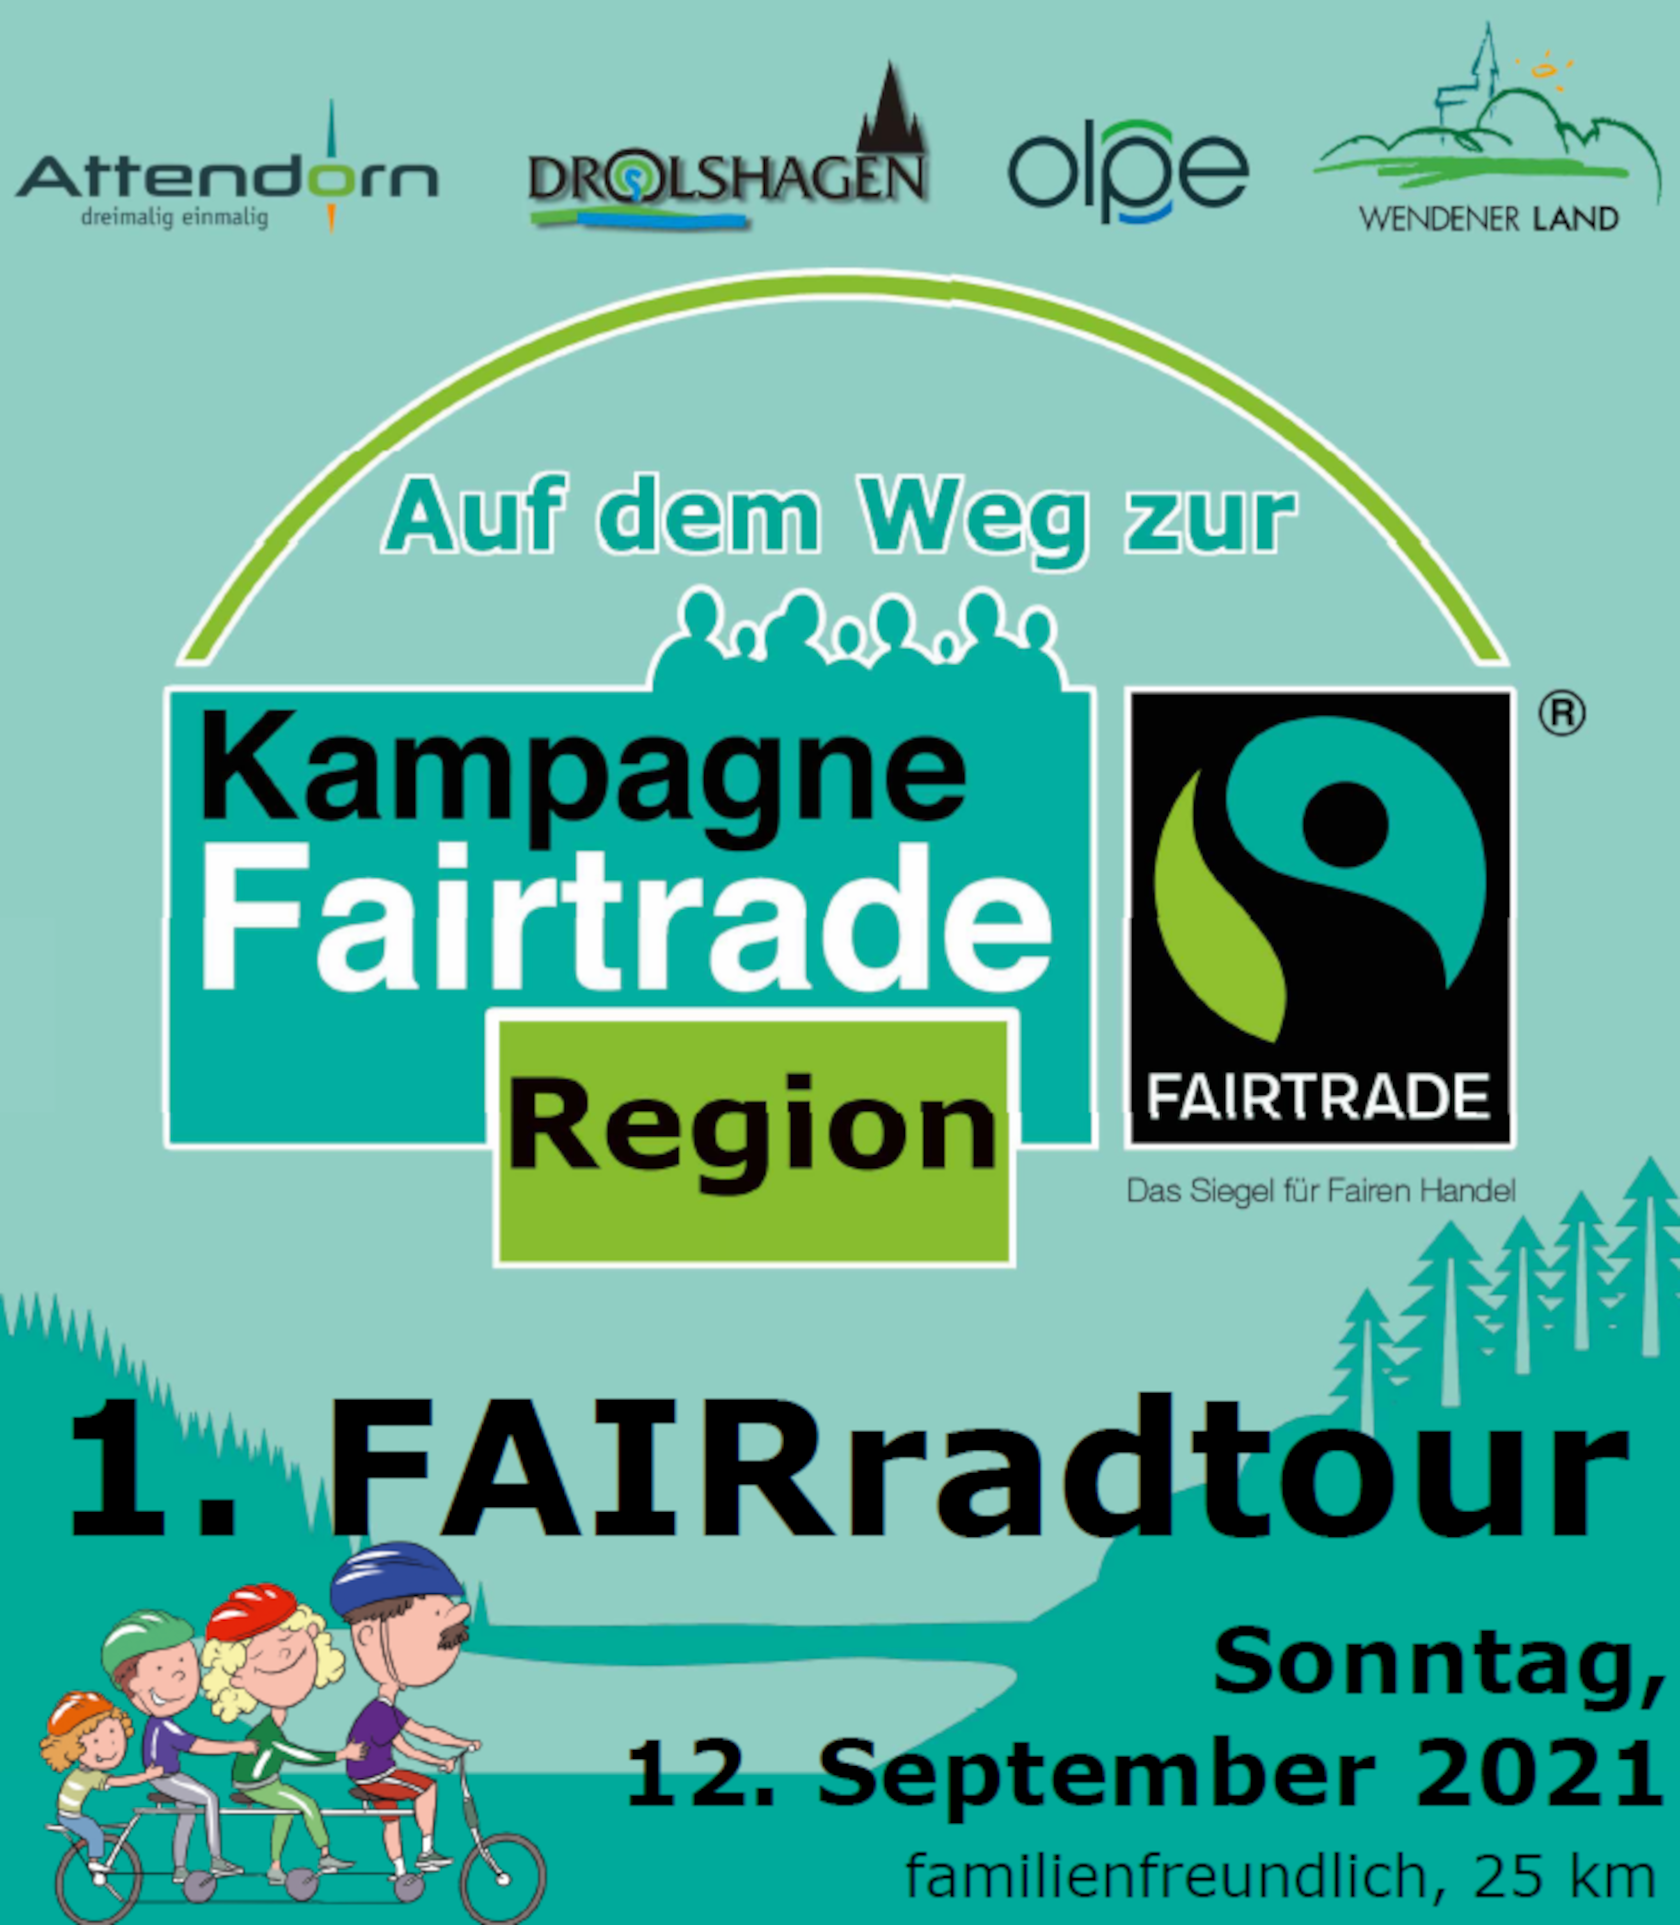 fairradtour